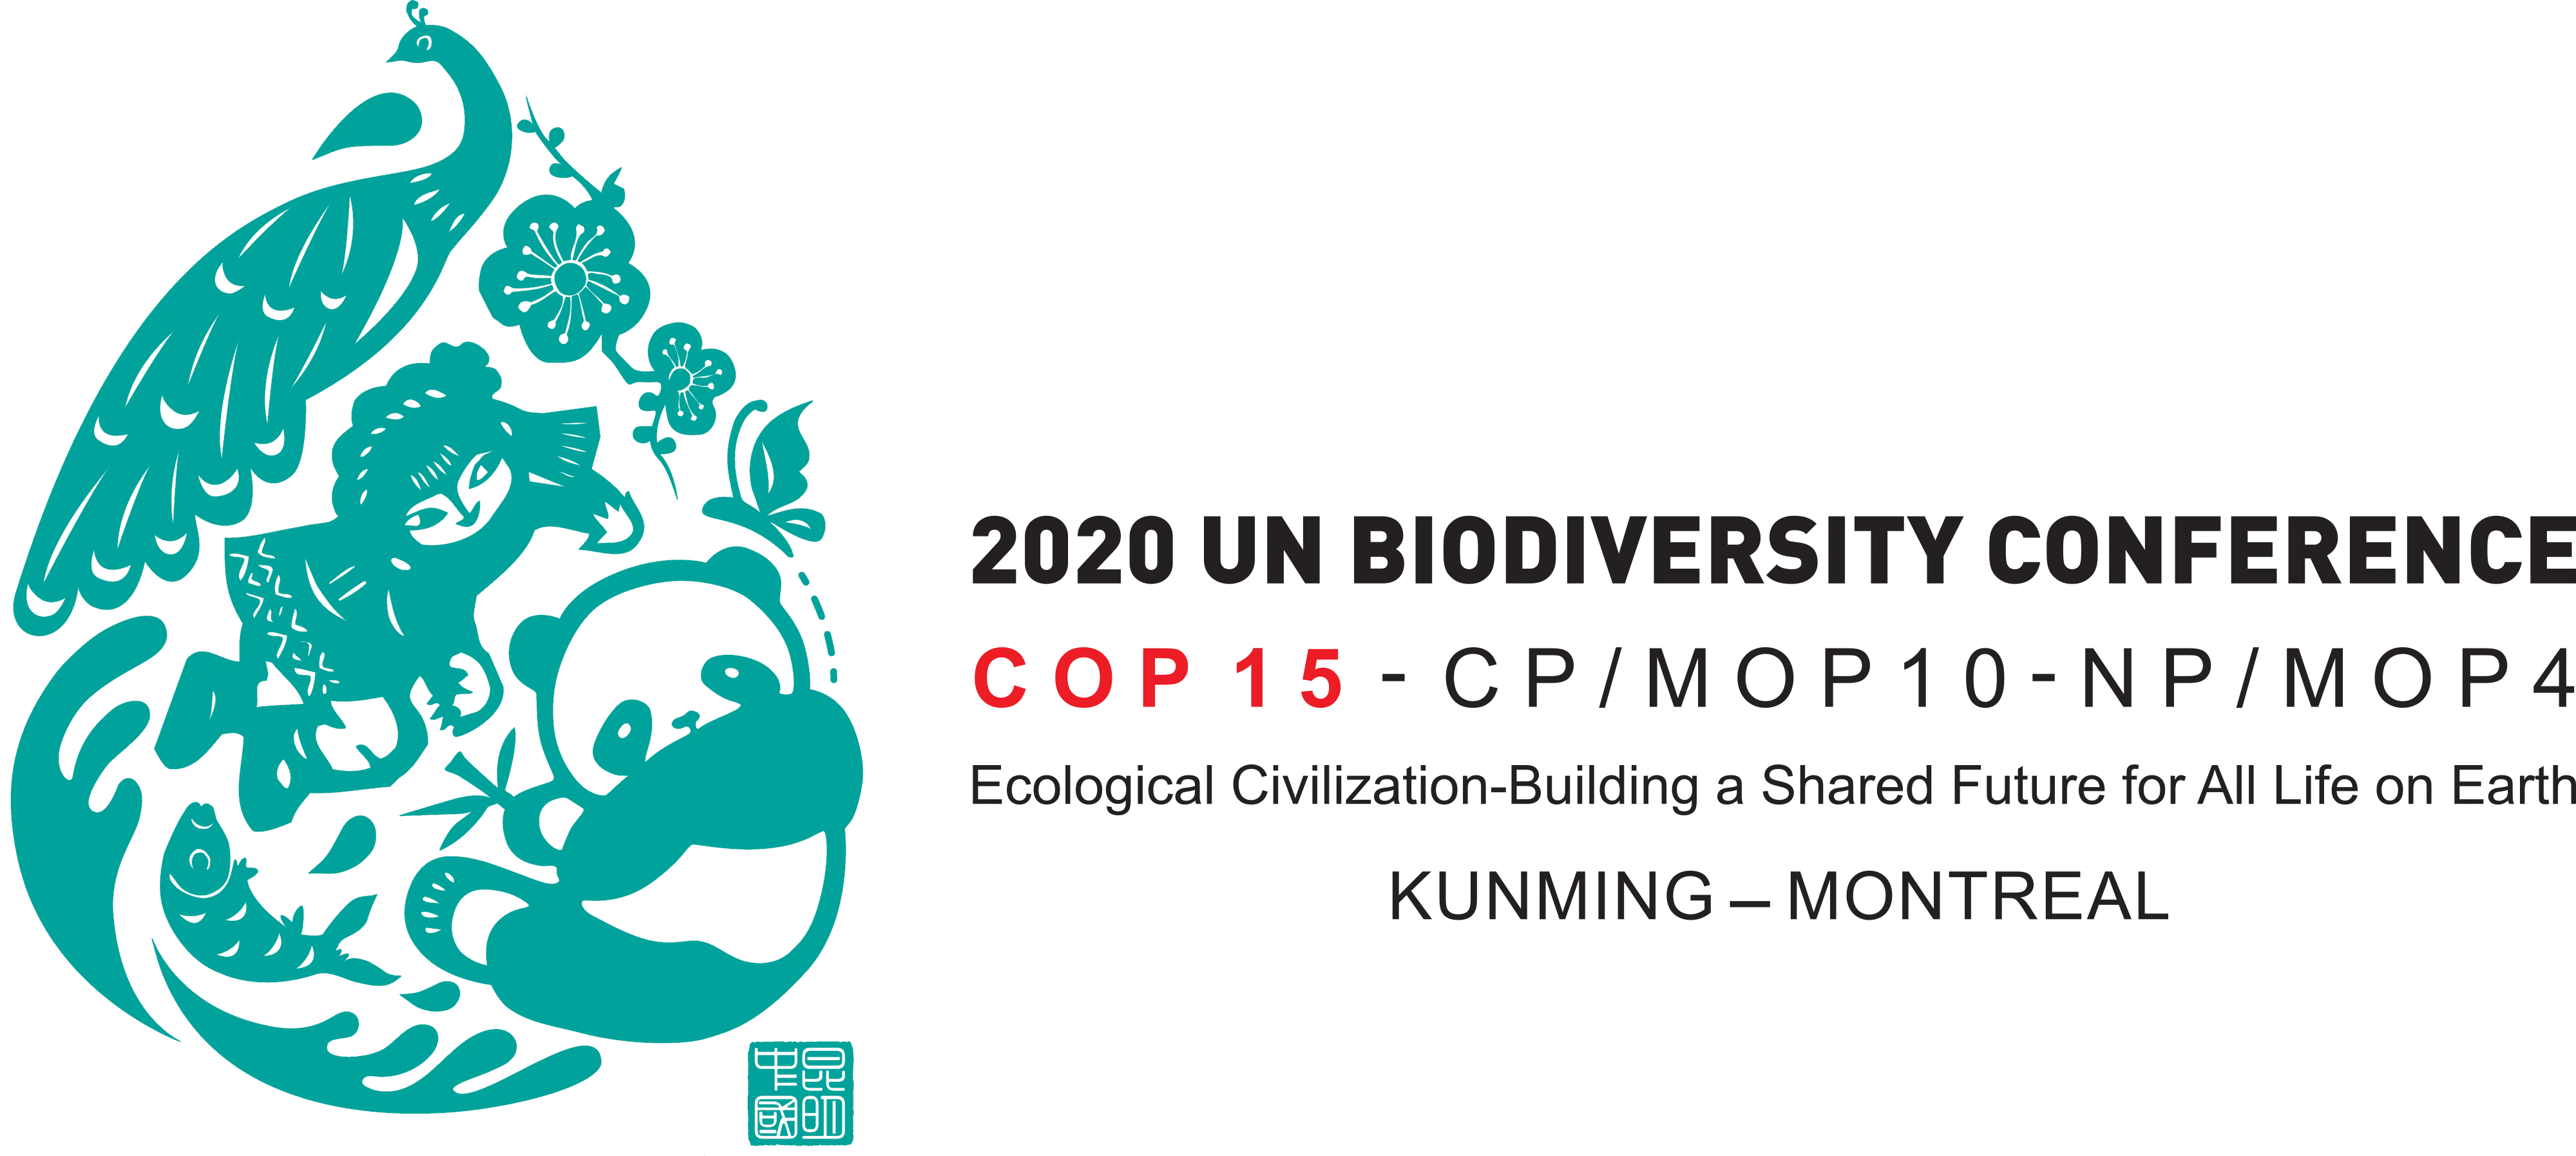 COP15 logo-en-hrz.png